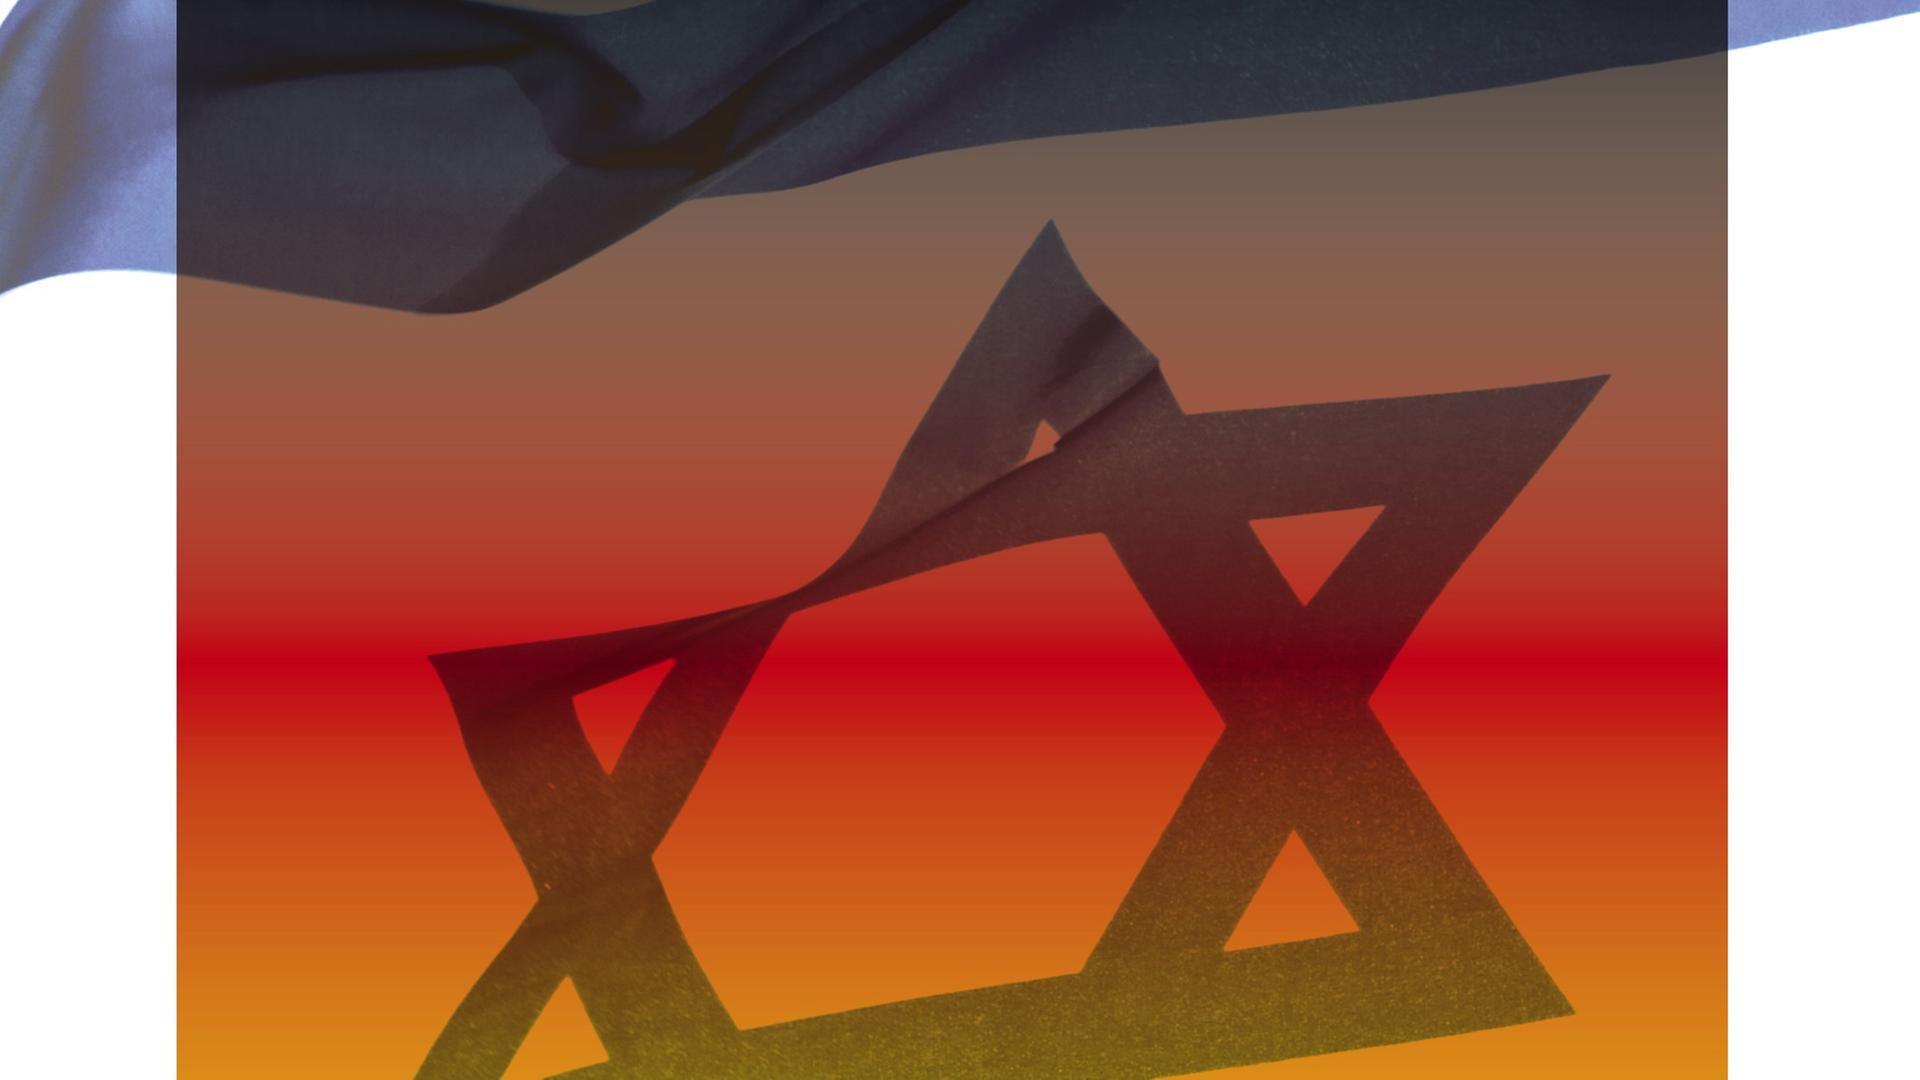 Zu sehen ist die israelische Nationalfahne, die durch einen schwarz-rot-goldenen Farbverlauf überlagert wird